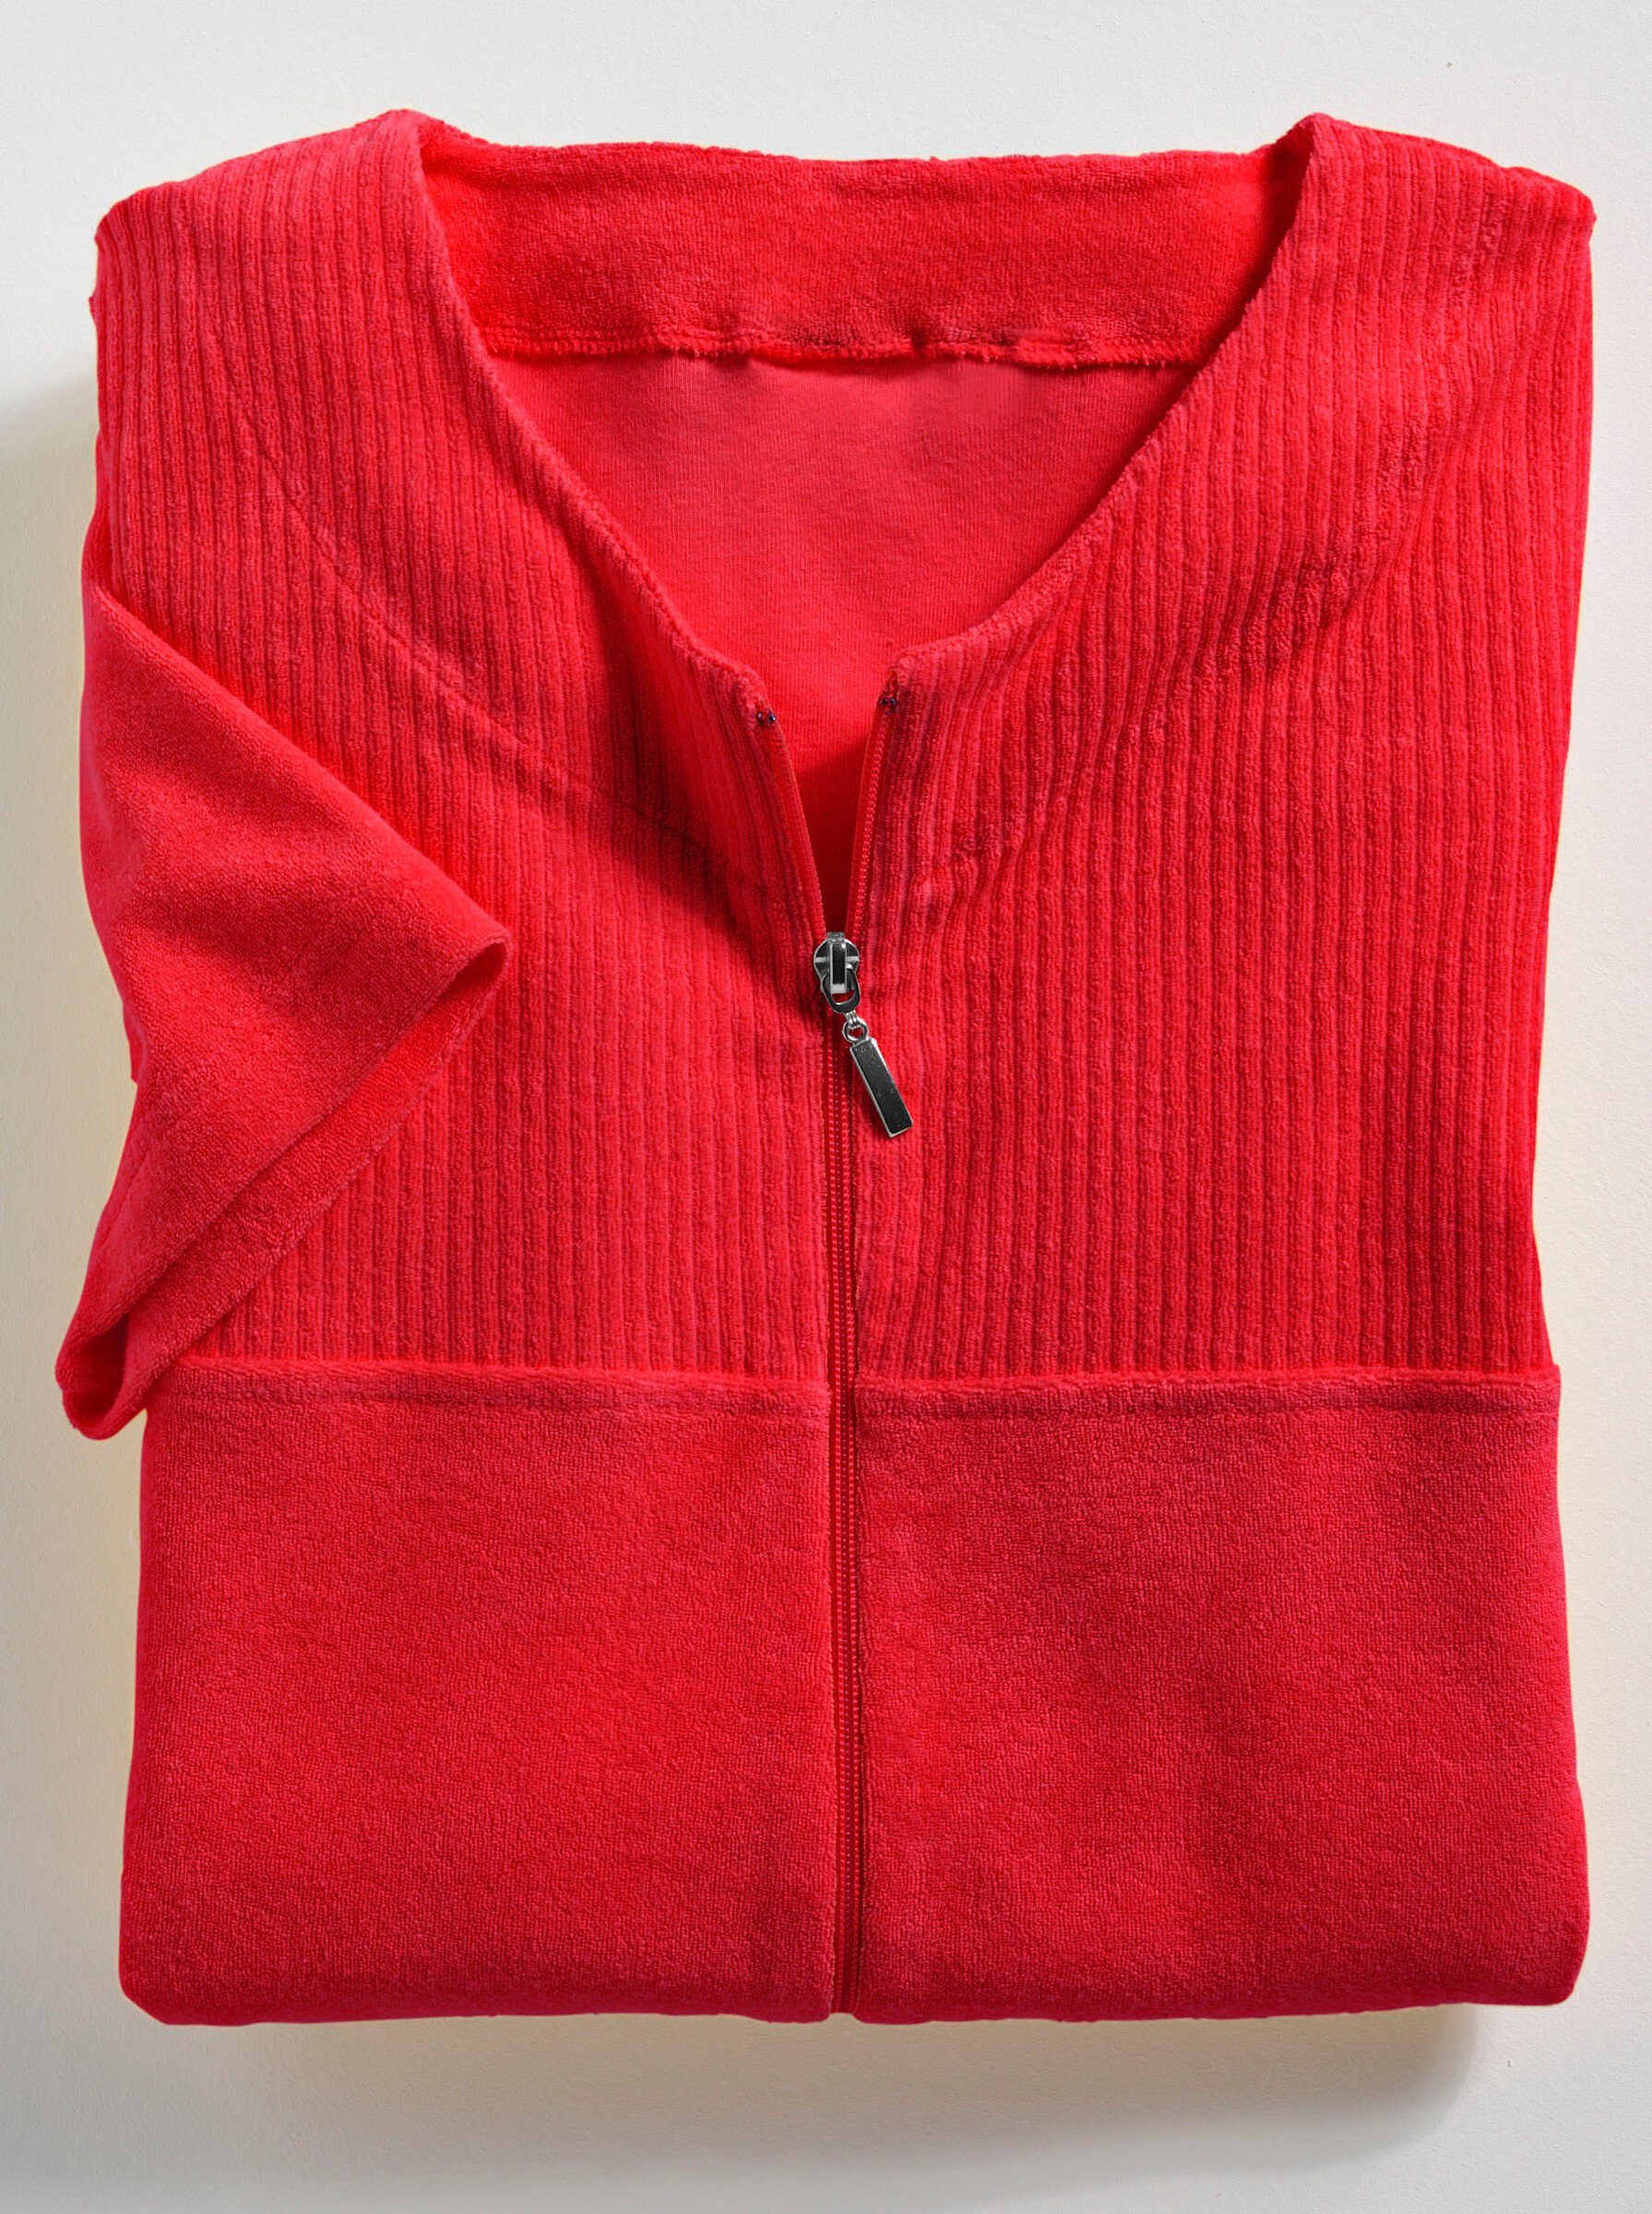 Länge 100 fashion cm, Baumwolle, Damenbademantel, rot Reißverschluss Wewo ca.